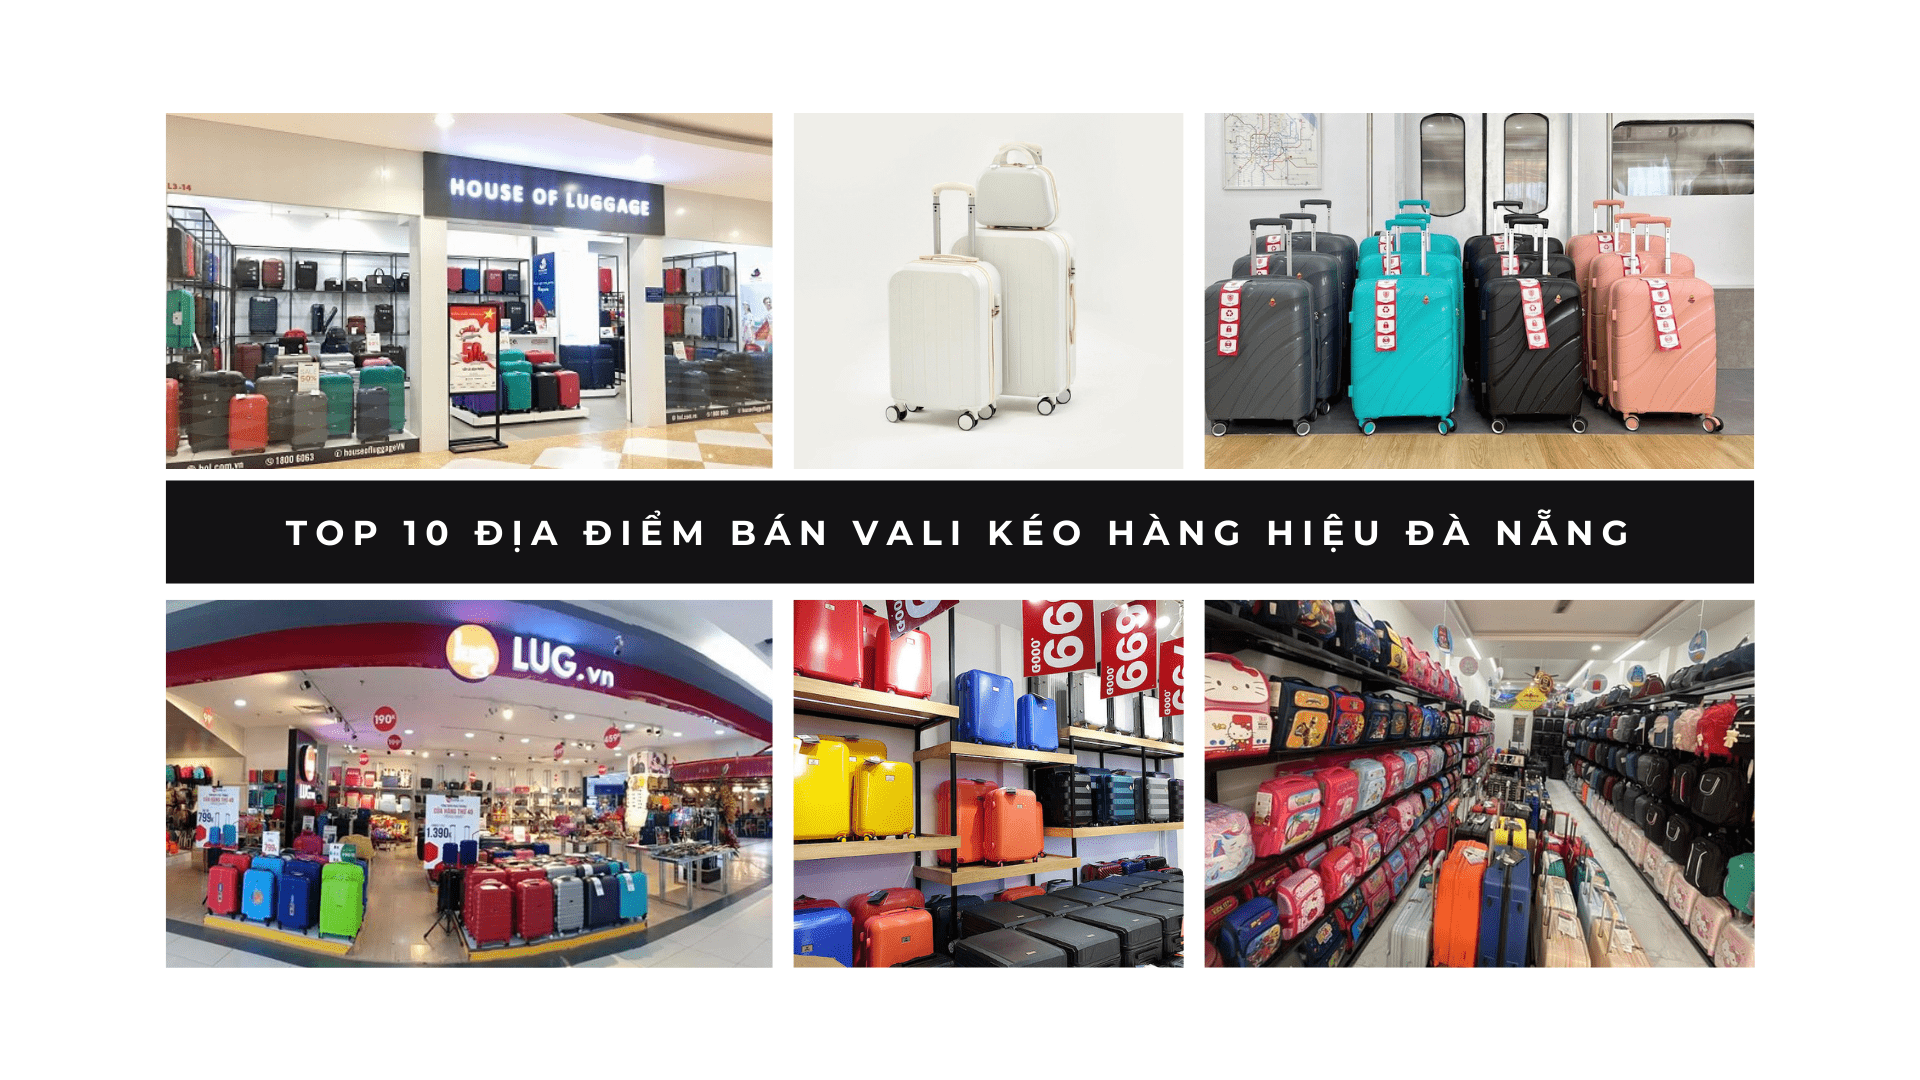 Top 10 địa điểm bán vali kéo hàng hiệu Đà Nẵng